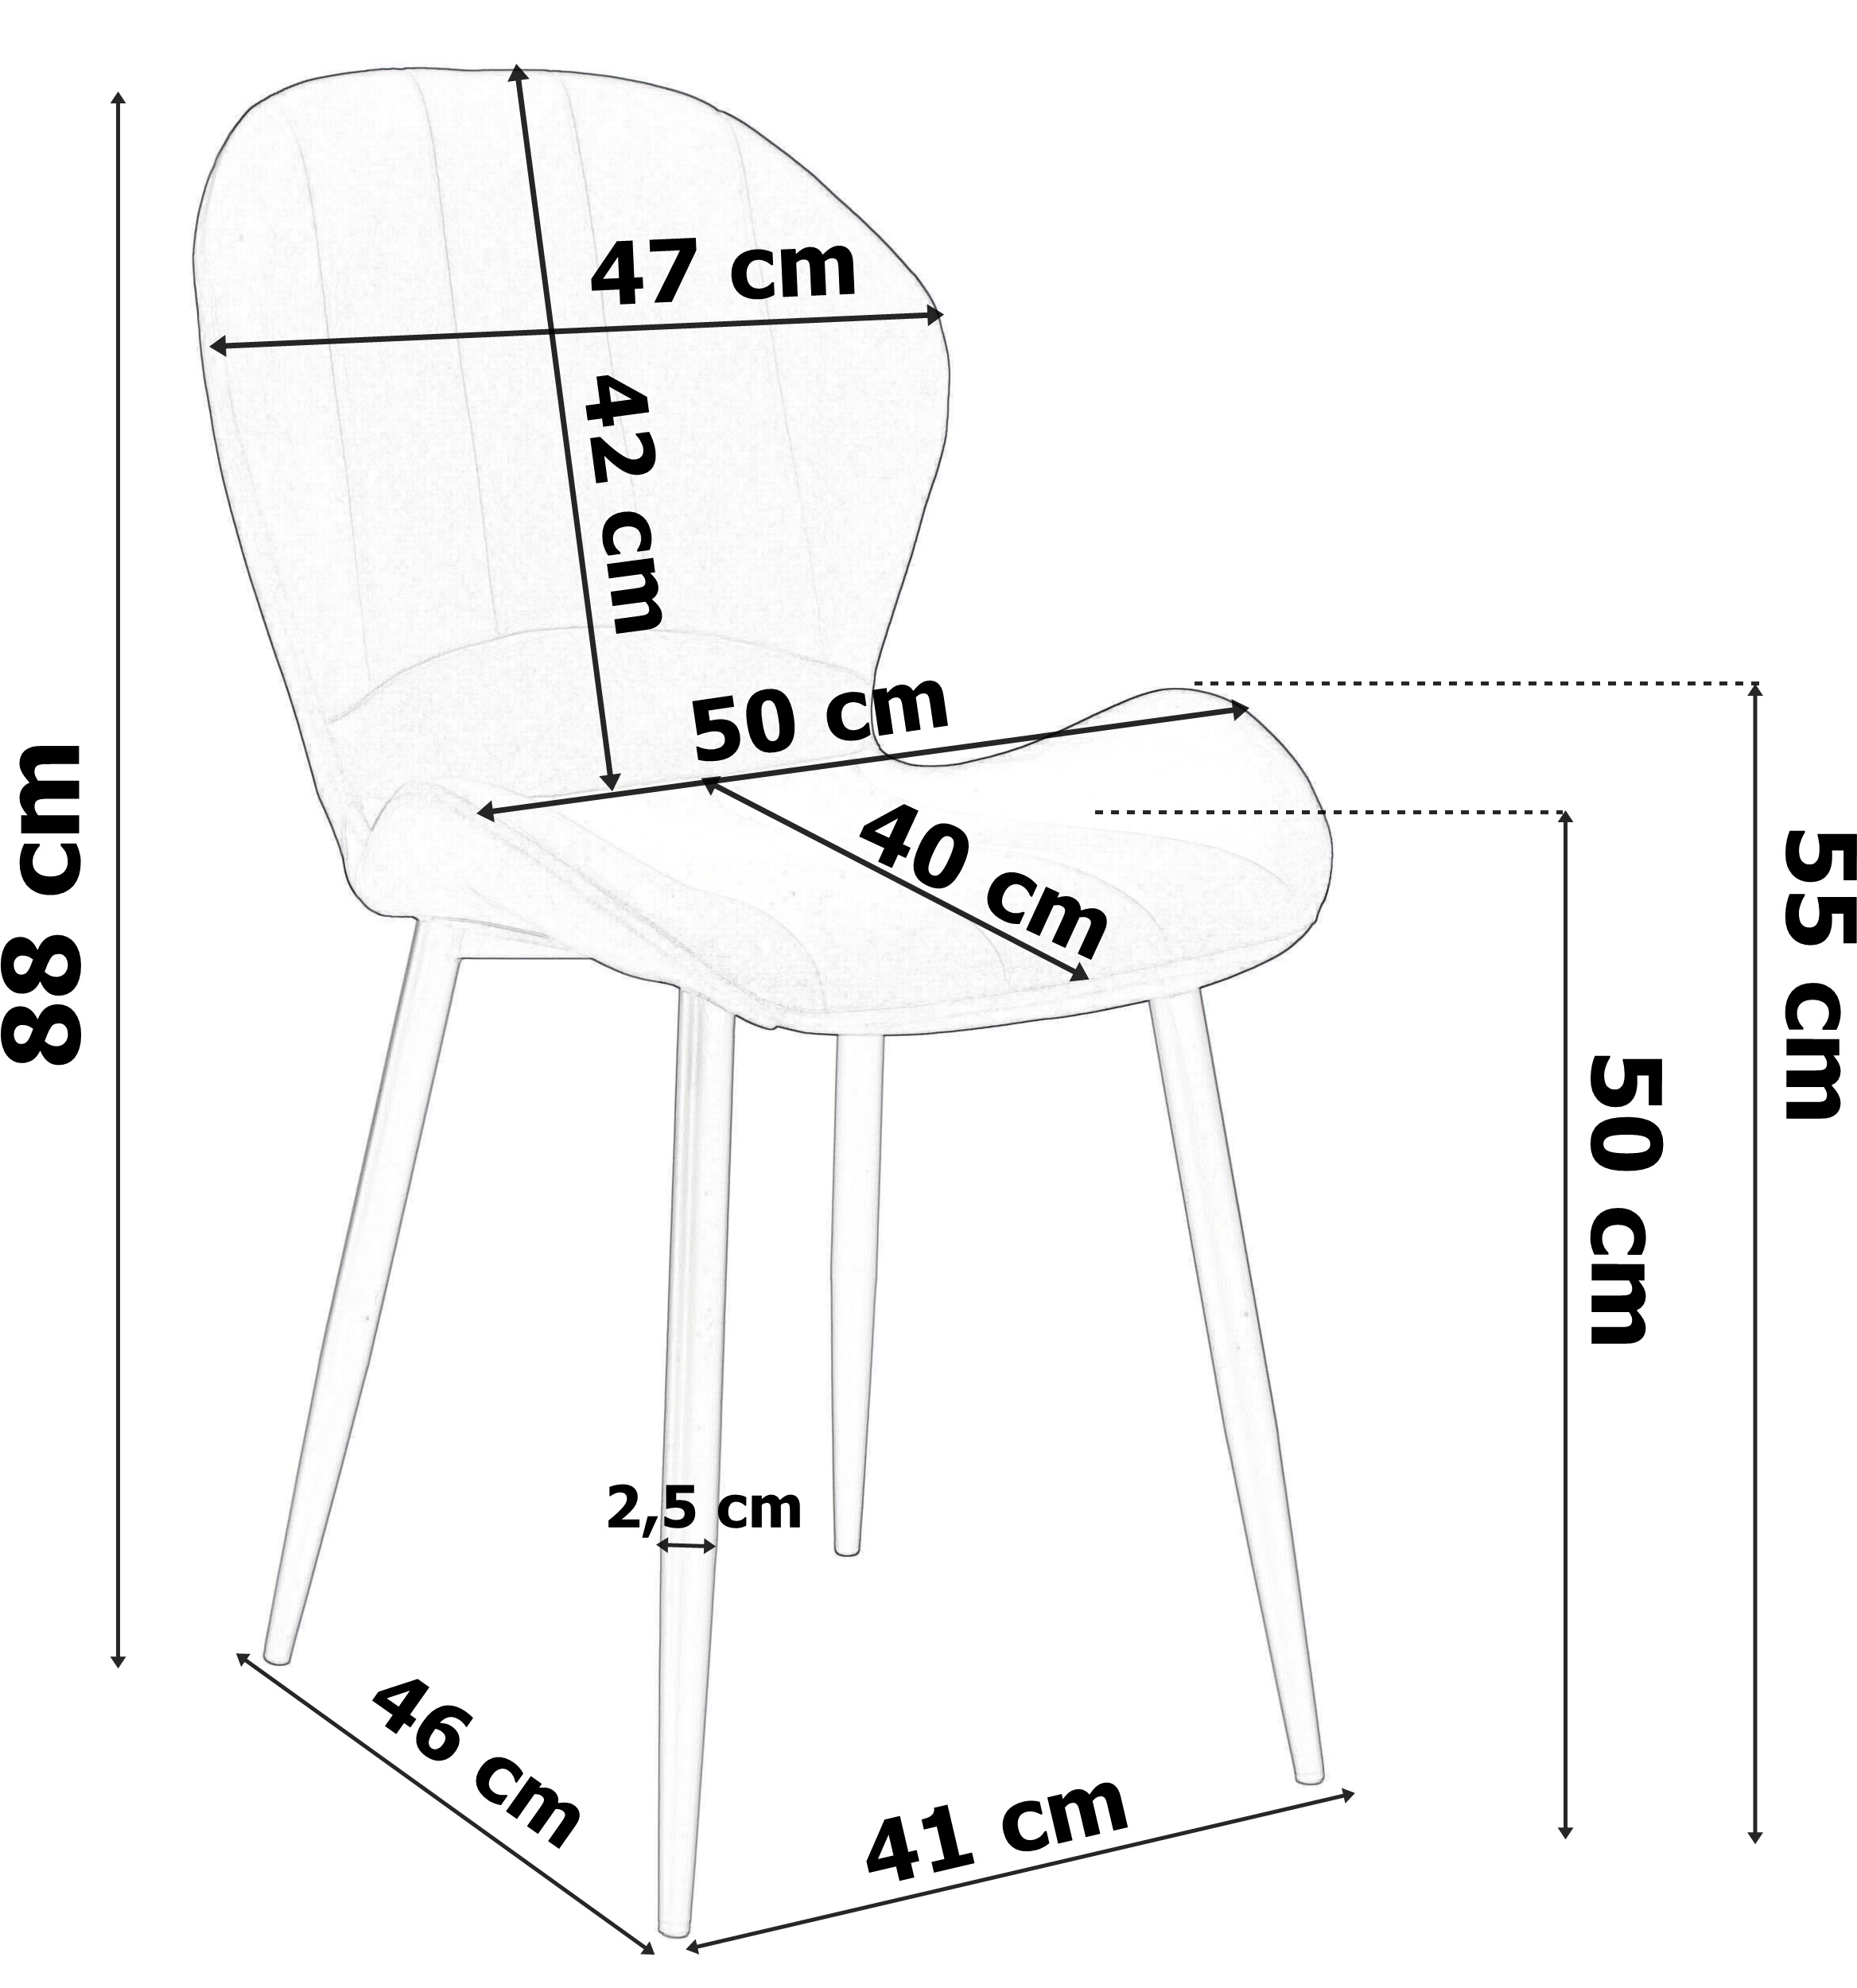 Krzesło welurowe SHELBY aksamitne czarne